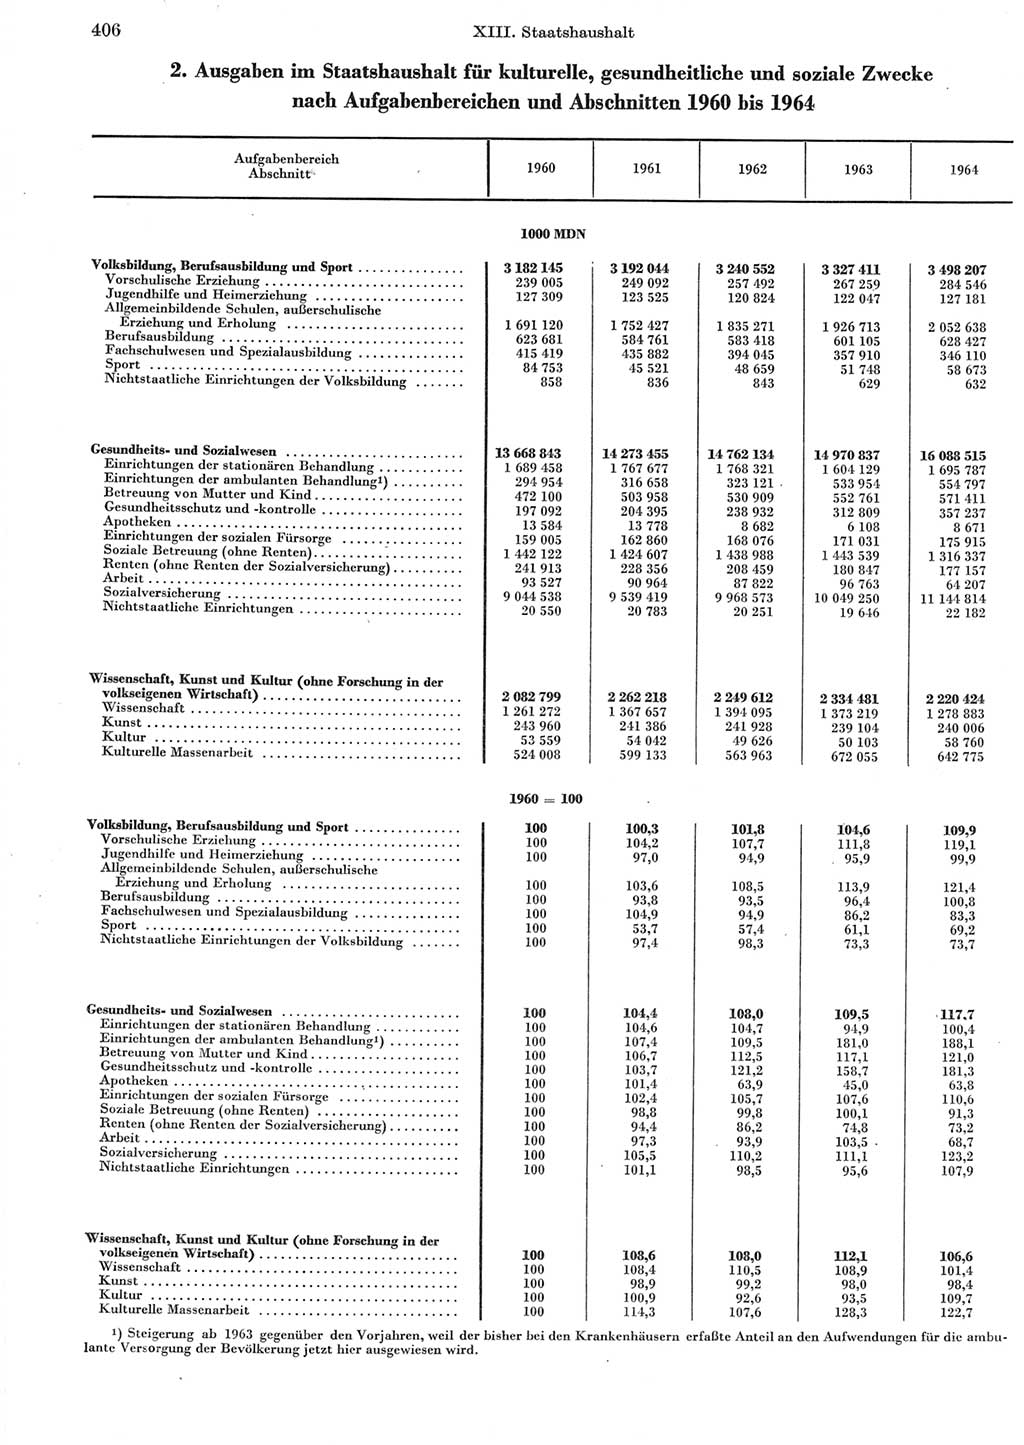 Statistisches Jahrbuch der Deutschen Demokratischen Republik (DDR) 1965, Seite 406 (Stat. Jb. DDR 1965, S. 406)